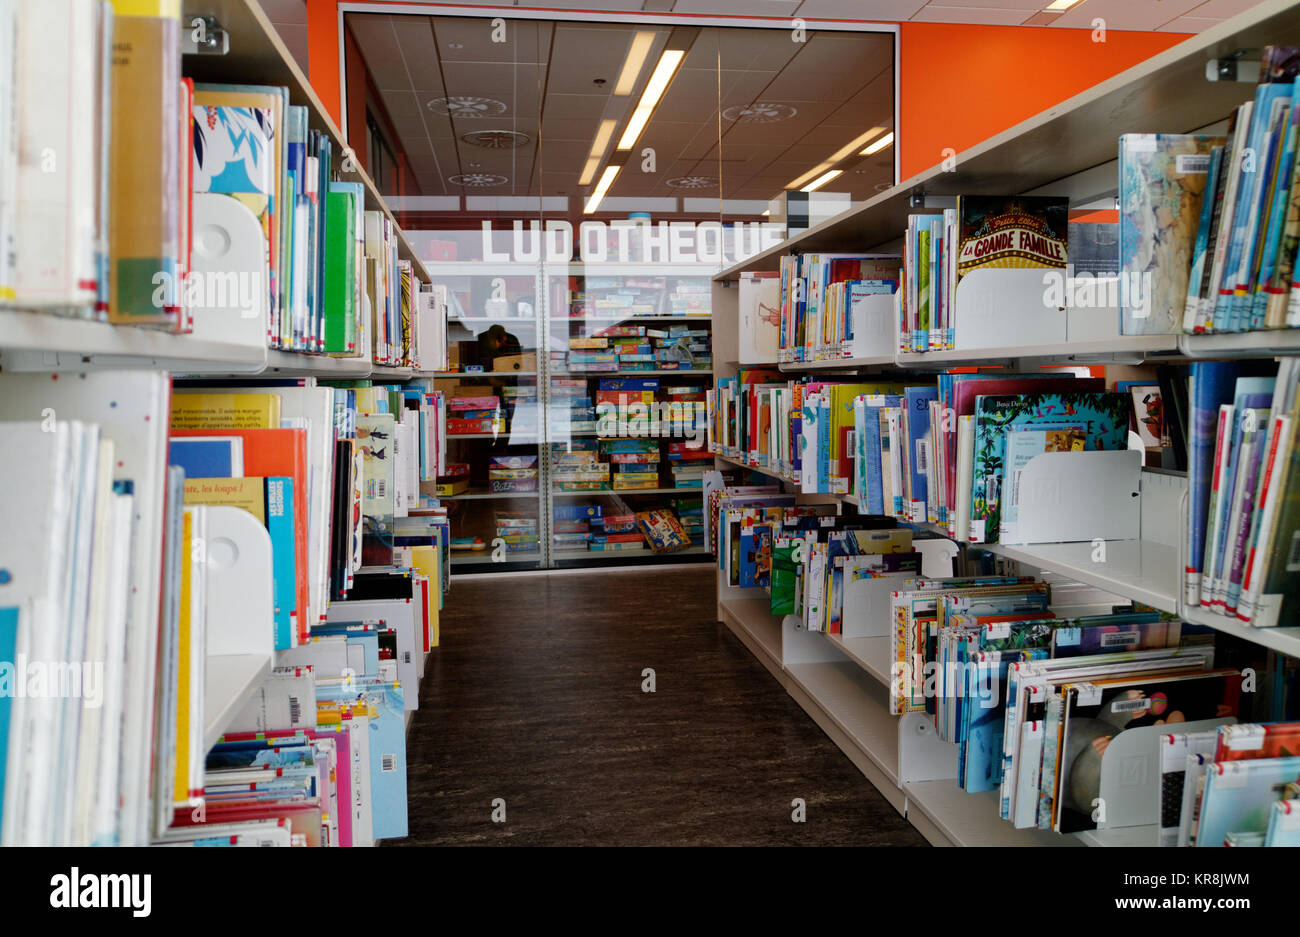 Die Ludotheque Spielzeug und Spiele Bibliothek in Quebec City Stockfoto